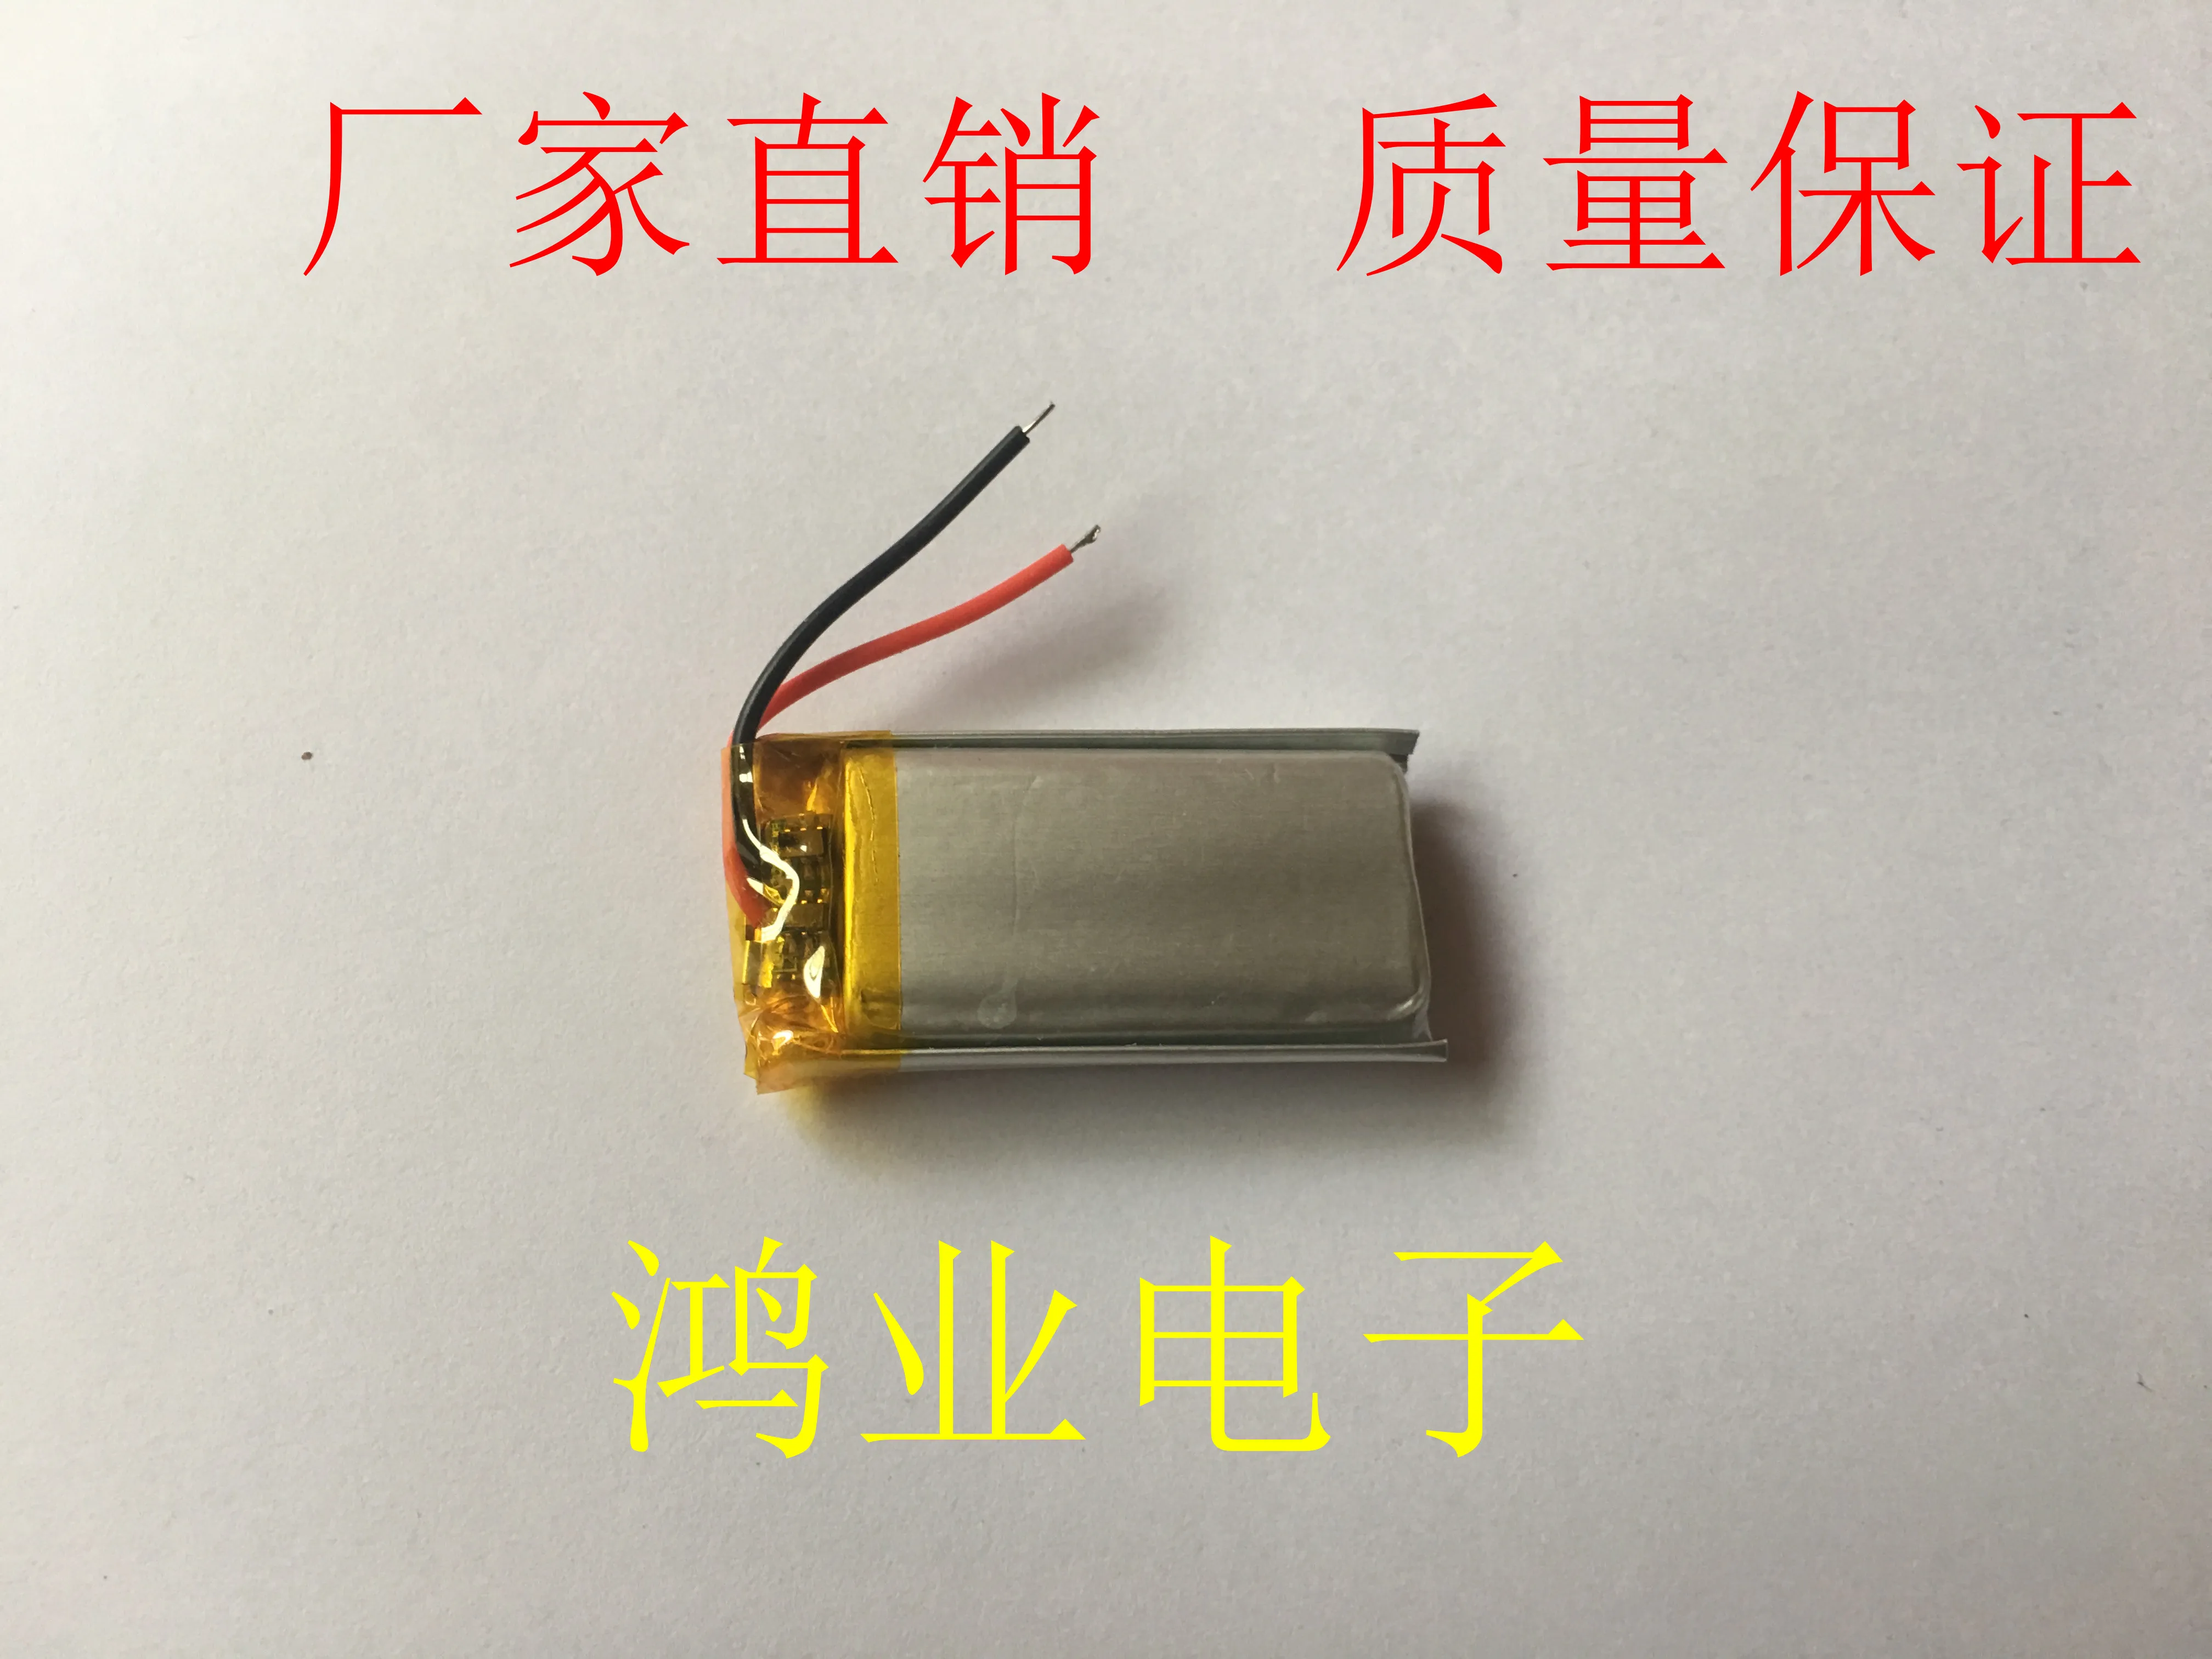 Paket 3.7 V polimer lityum pil 602035 P/062035 P 400 MAH noktası okuma kalem, Bluetooth kulaklık, vb.